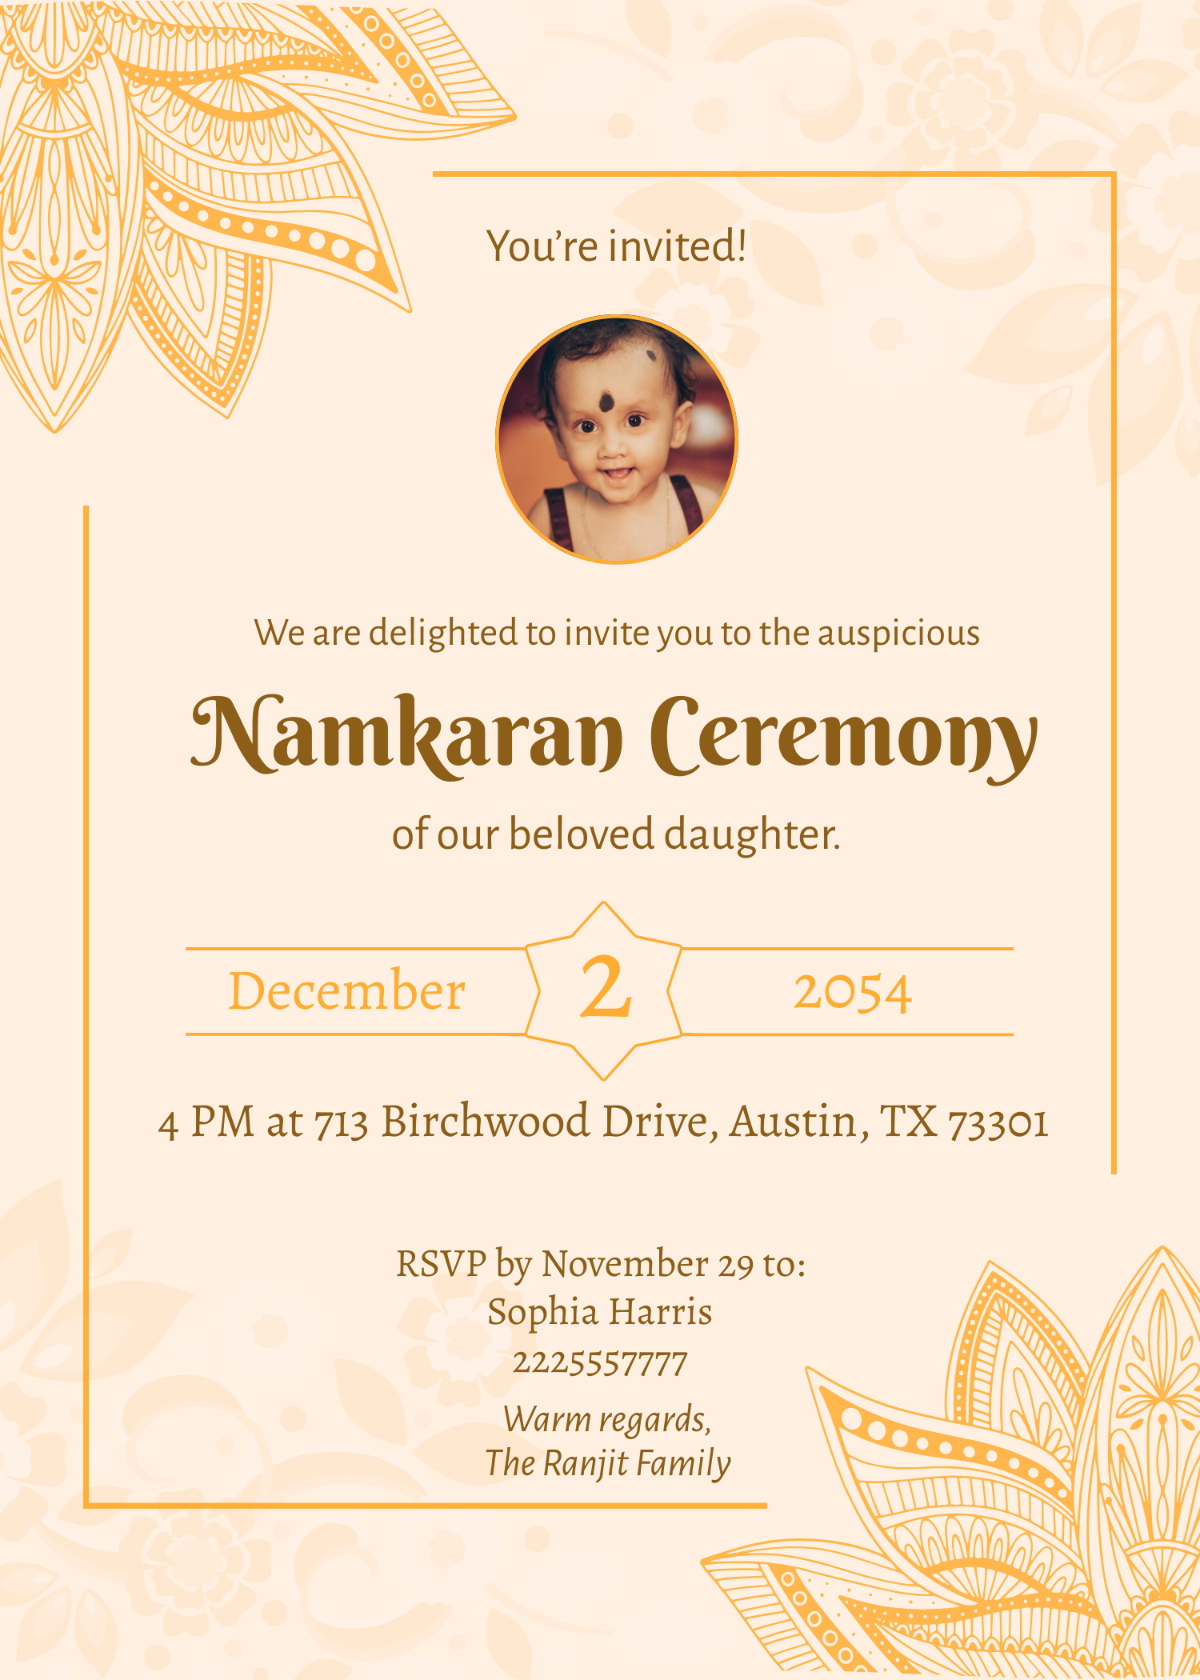 Namkaran invitation card